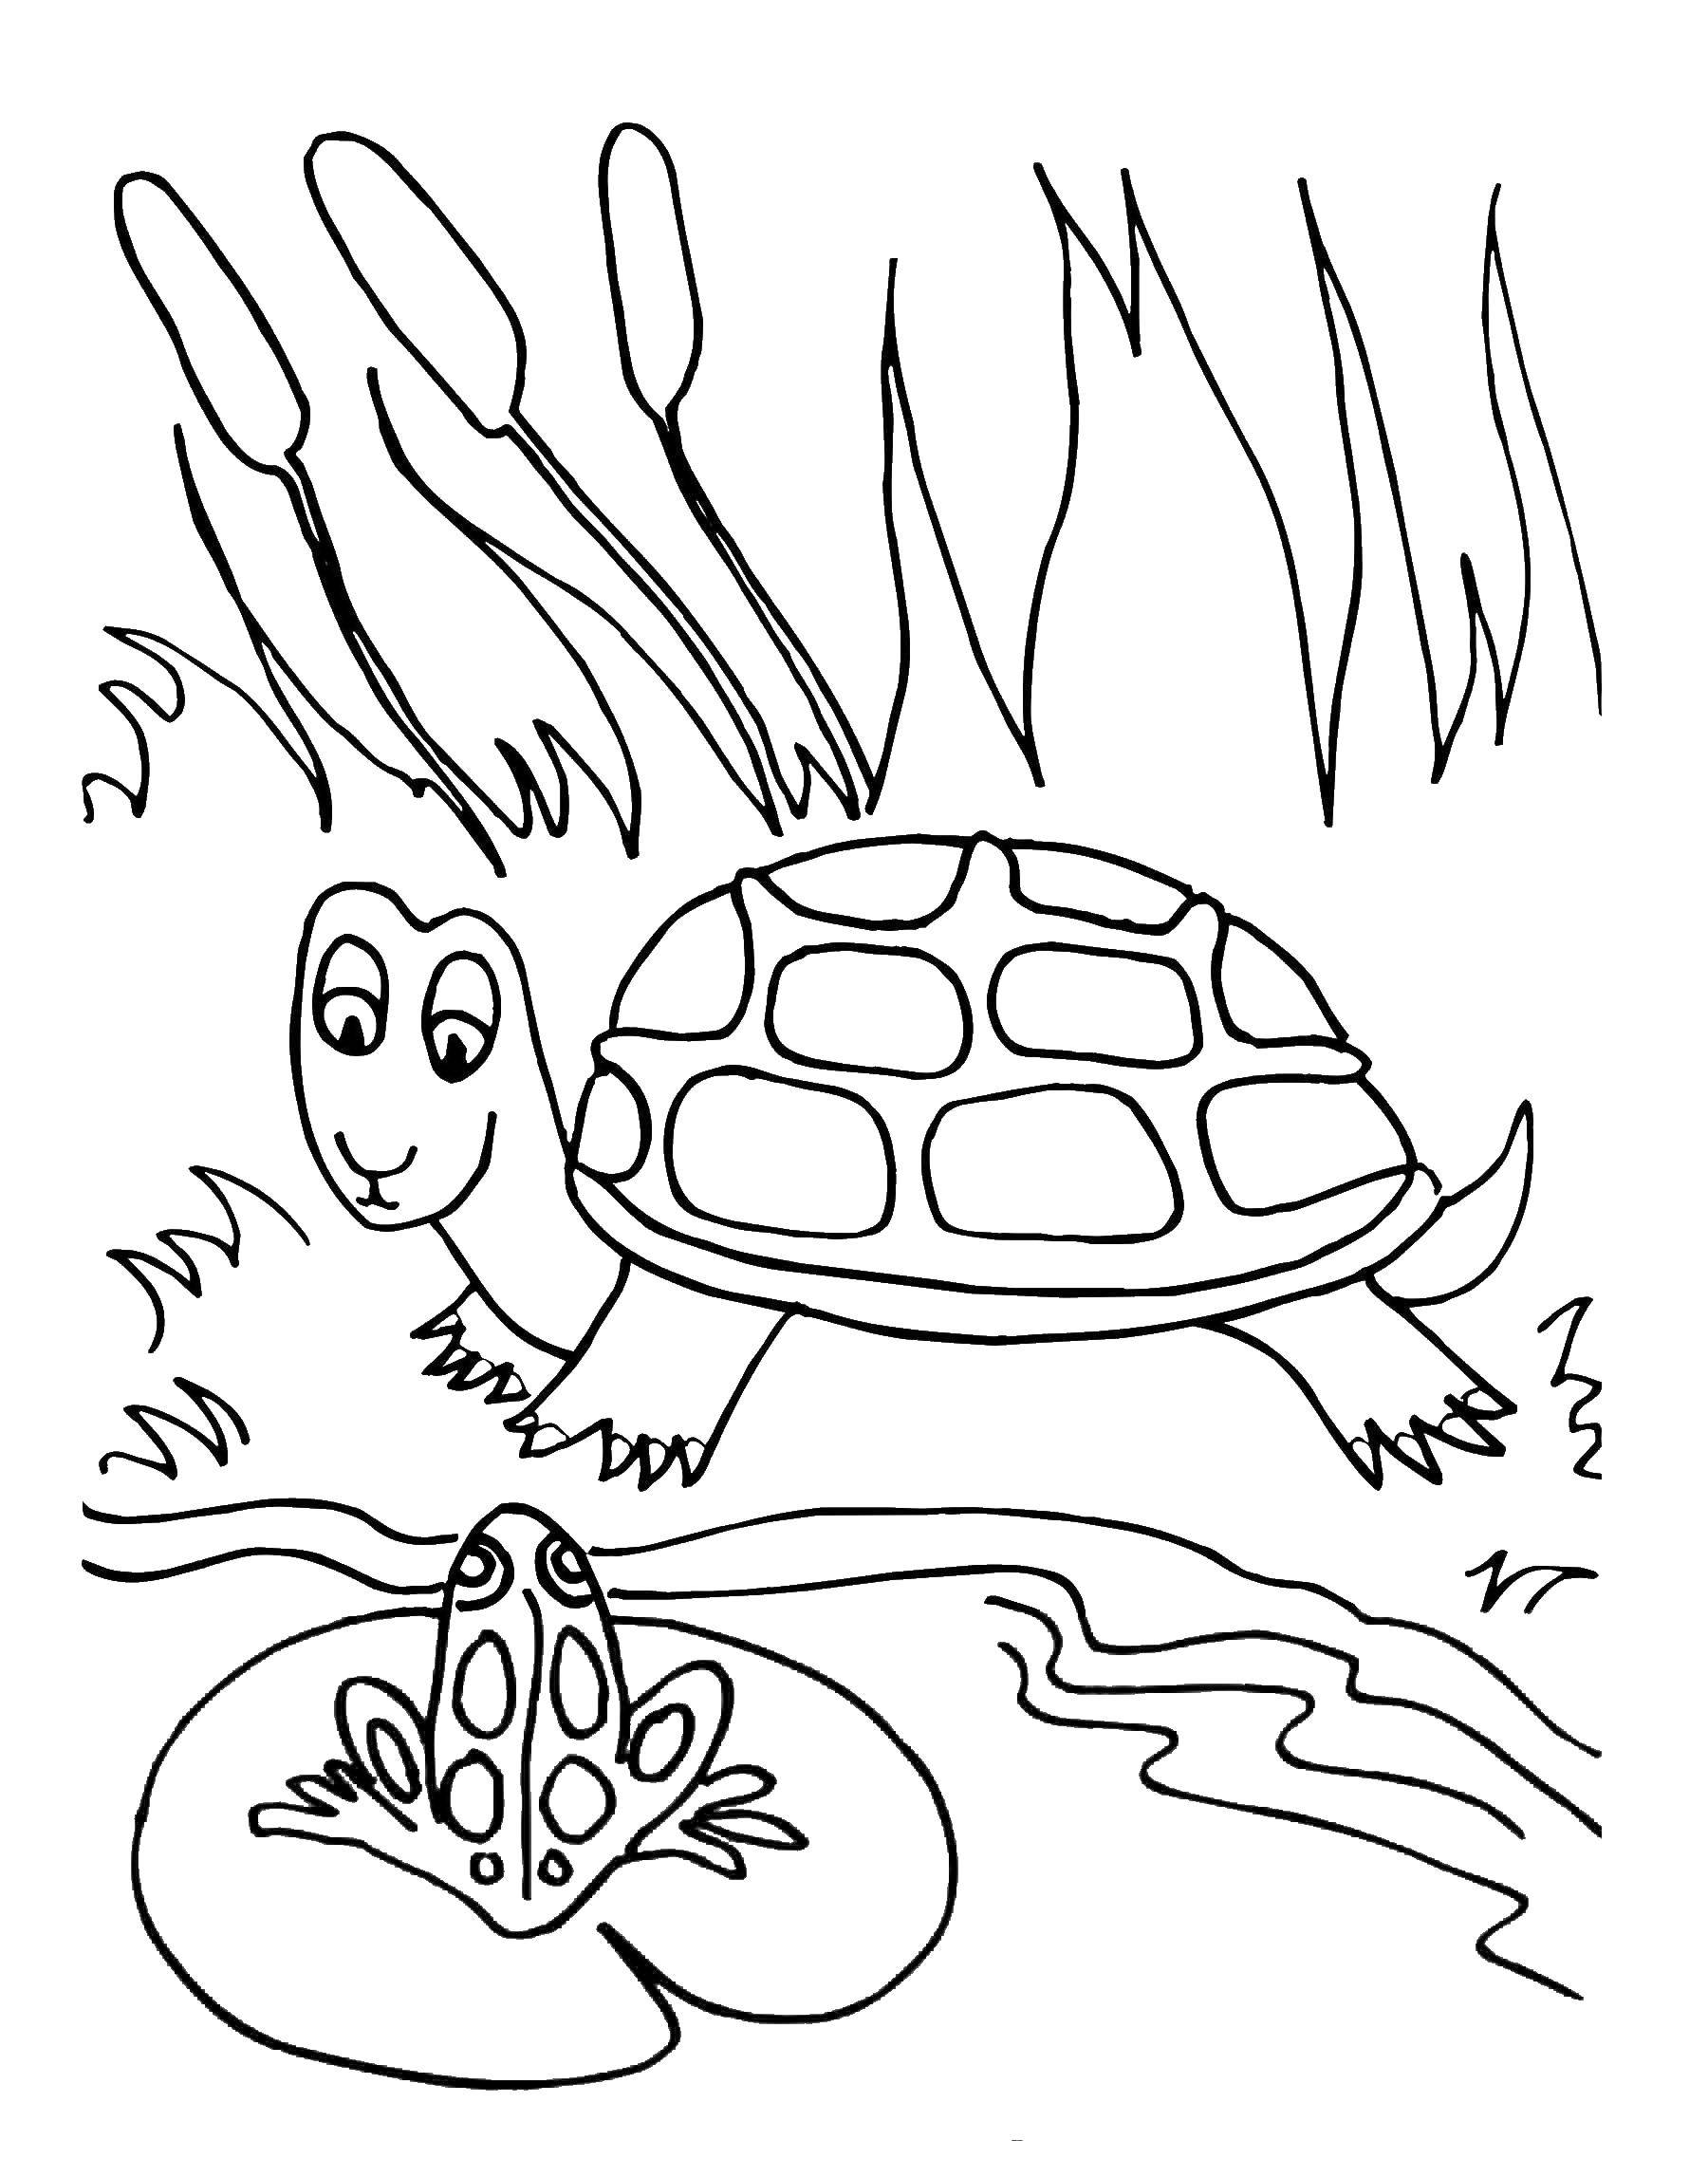 Название: Раскраска Черепашка и лягушка. Категория: Животные. Теги: животные, черепаха, панцирь, лягушка.